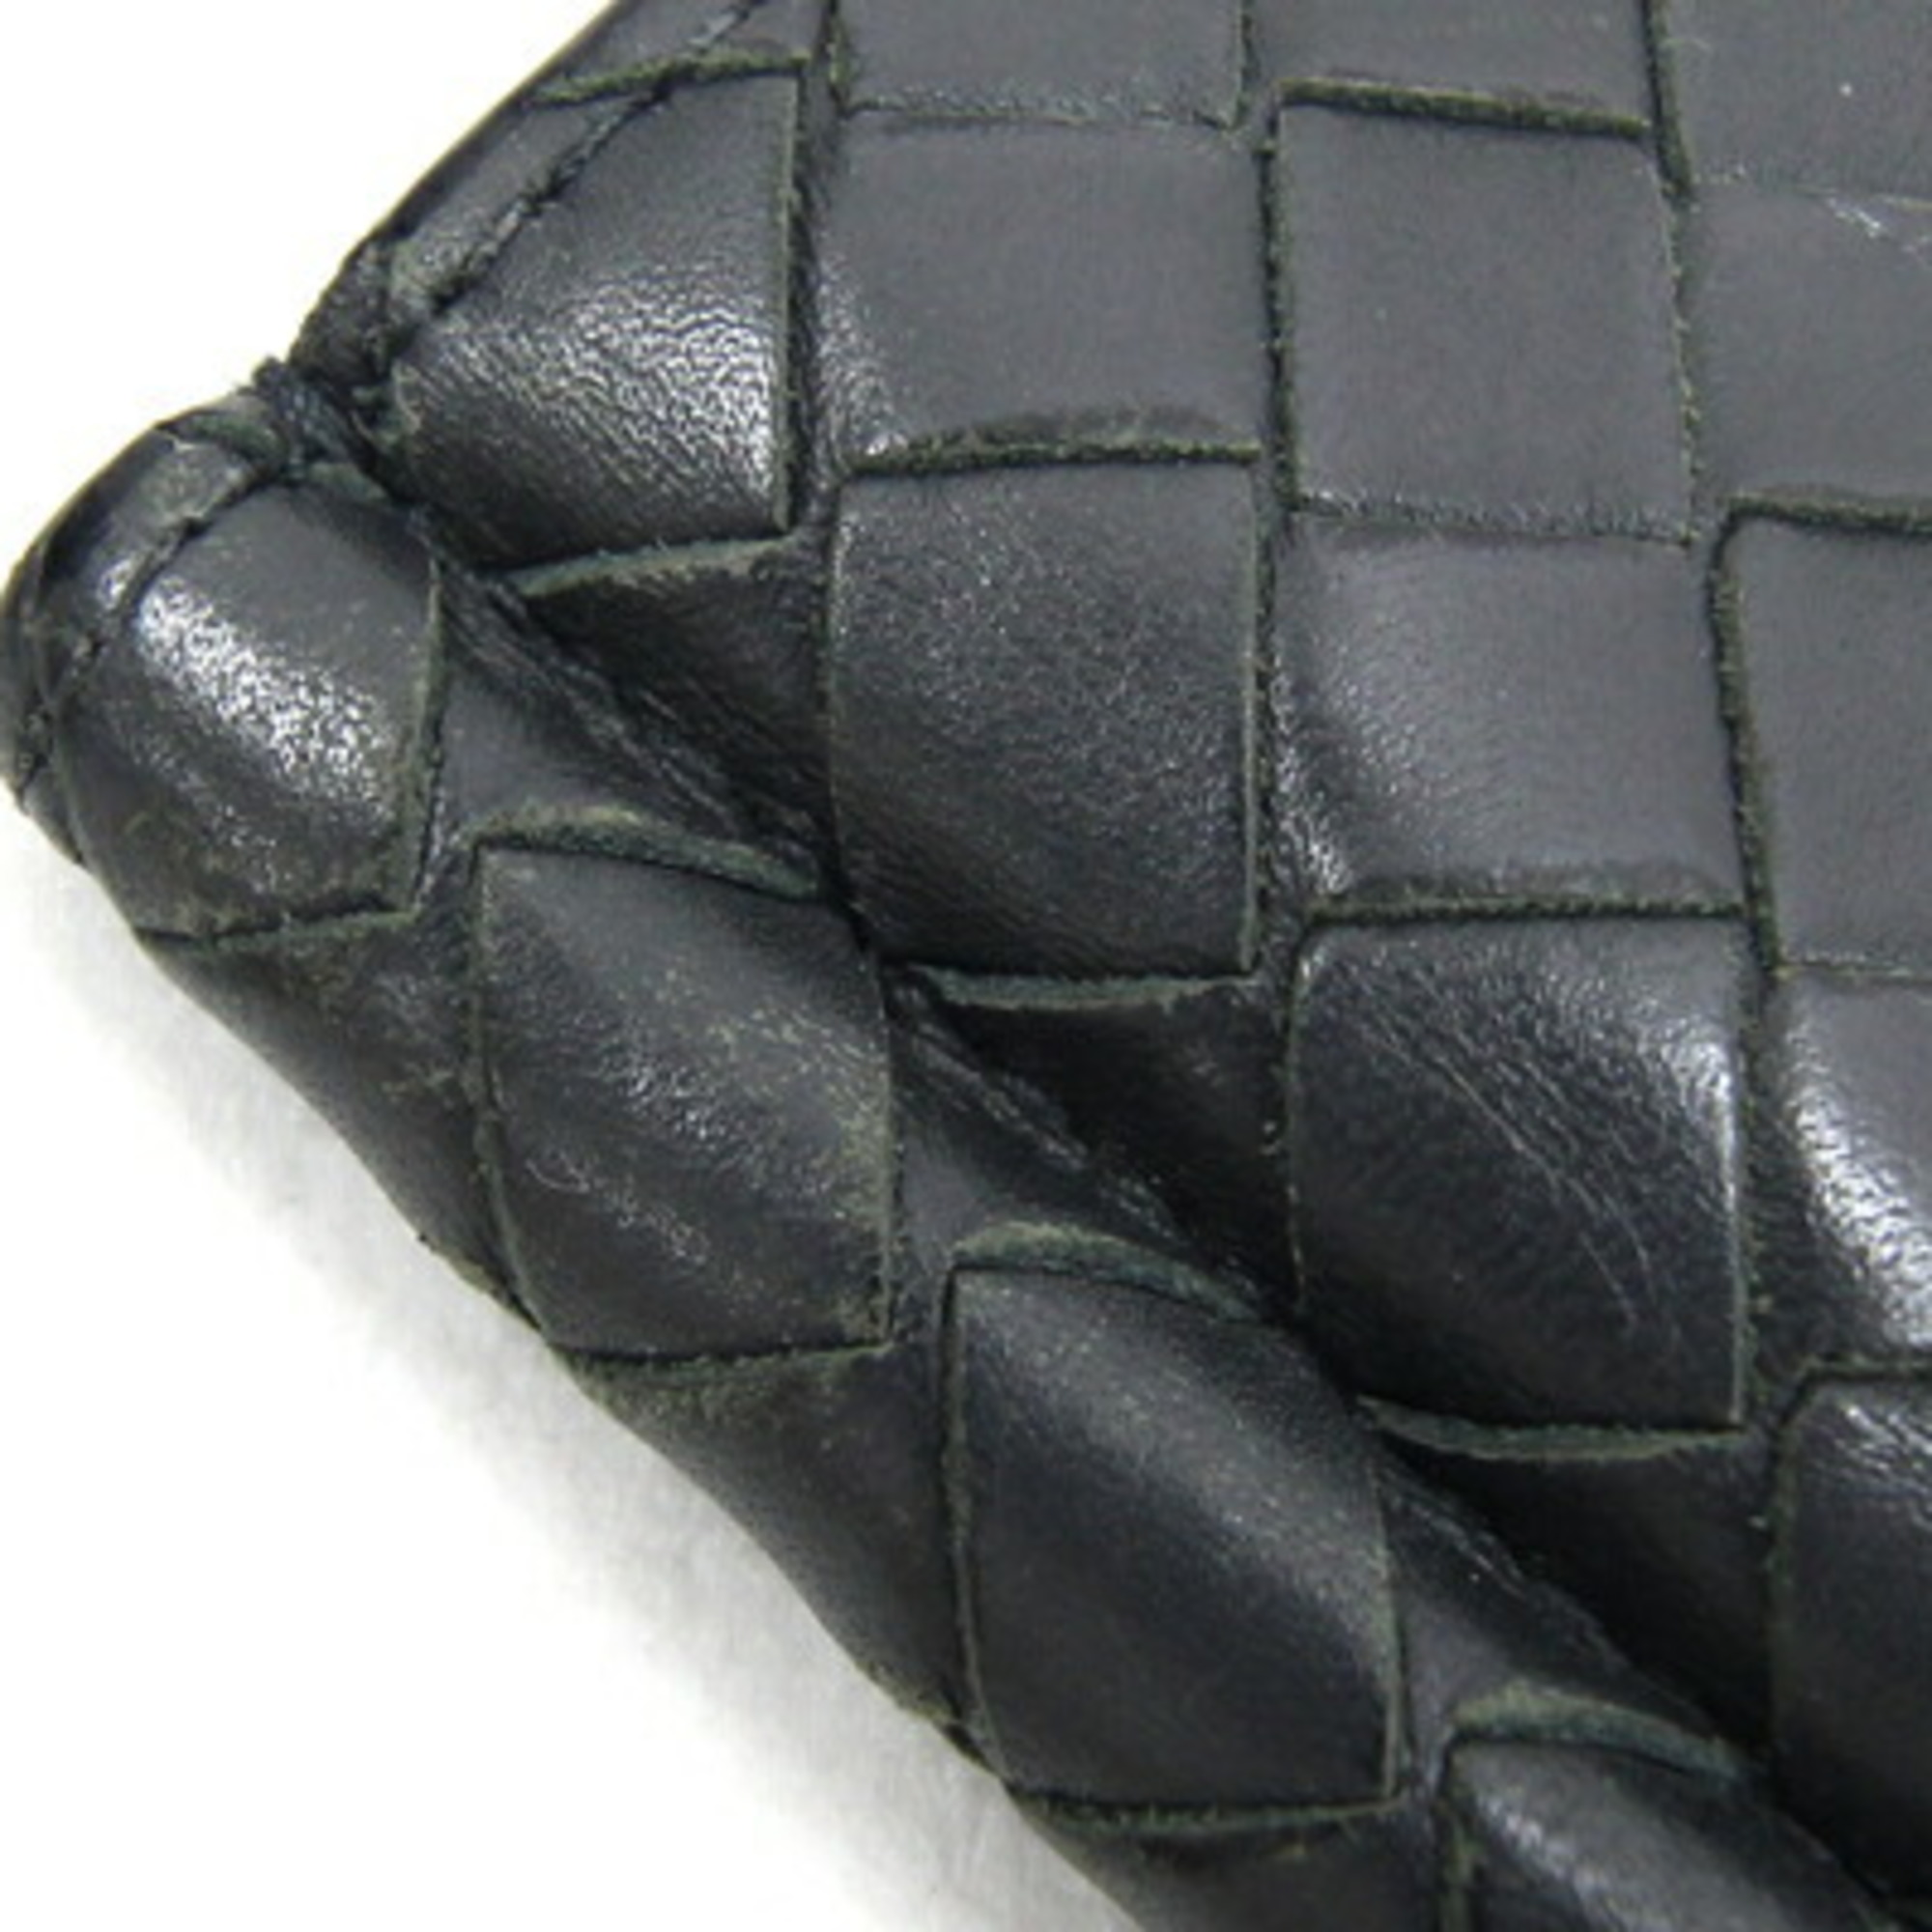 Bottega Veneta Bi-fold Money Clip Intrecciato 390877 Grey Black Leather Bill Men's BOTTEGA VENETA